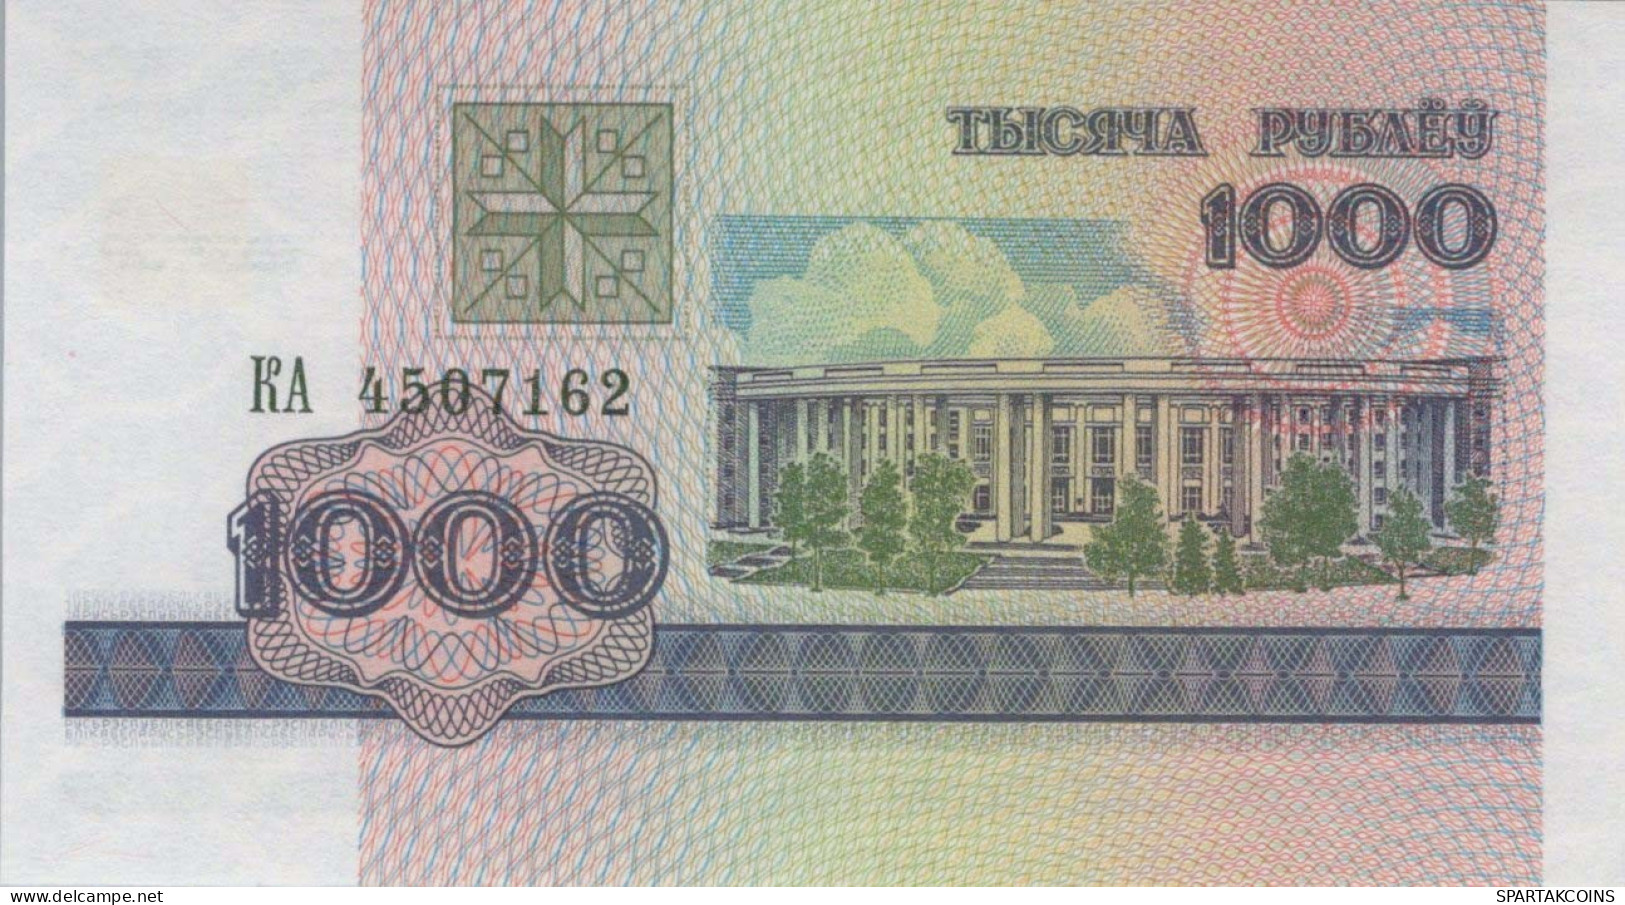 1000 RUBLES 1998 BELARUS Papiergeld Banknote #PJ292 - Lokale Ausgaben